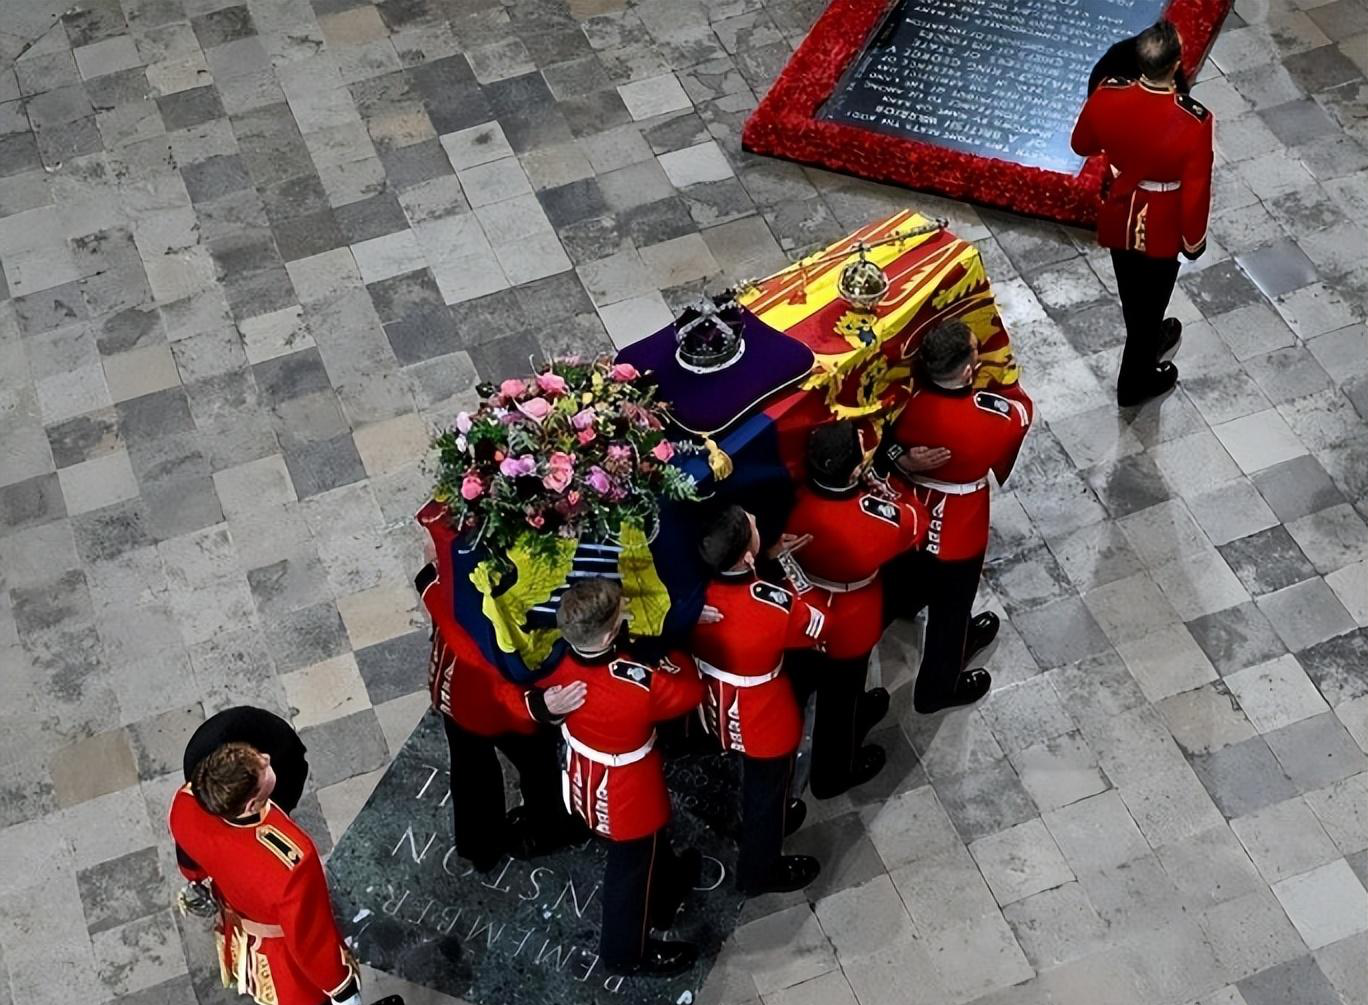 96岁英女王去世放入550斤铅木棺,和丈夫合葬,30年前就筹划葬礼